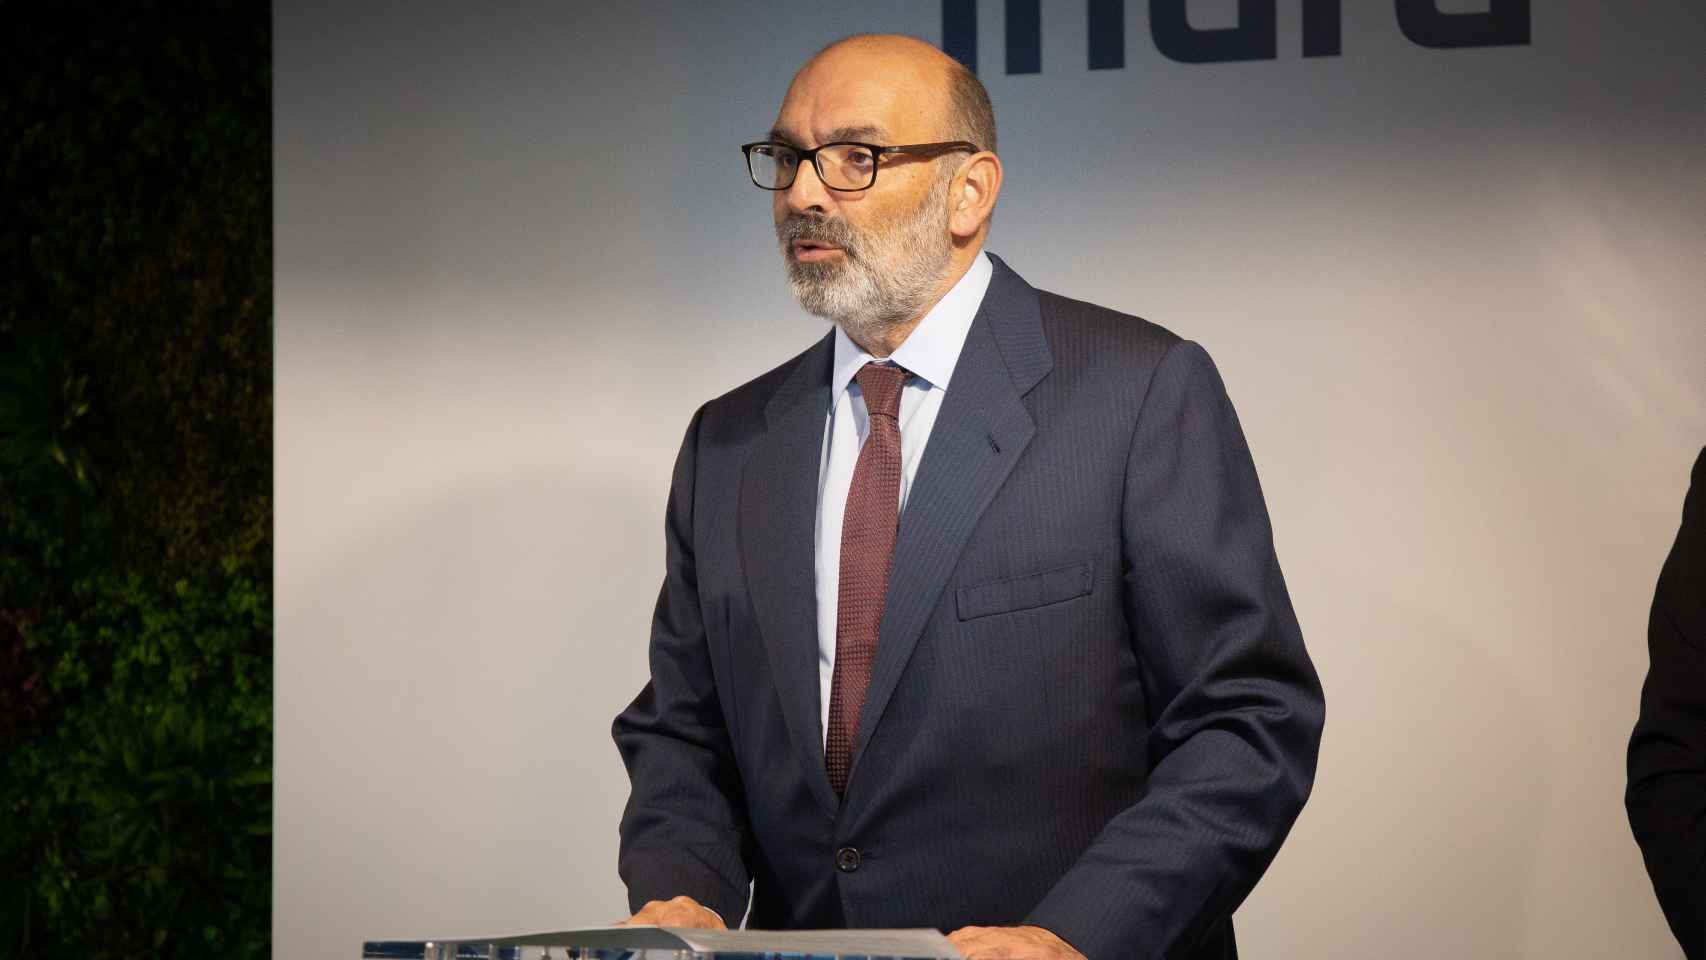 El presidente de Indra, Fernando Abril – Martorell durante la inauguración de un centro tecnológico en la localidad barcelonesa de Sant Joan Despí.